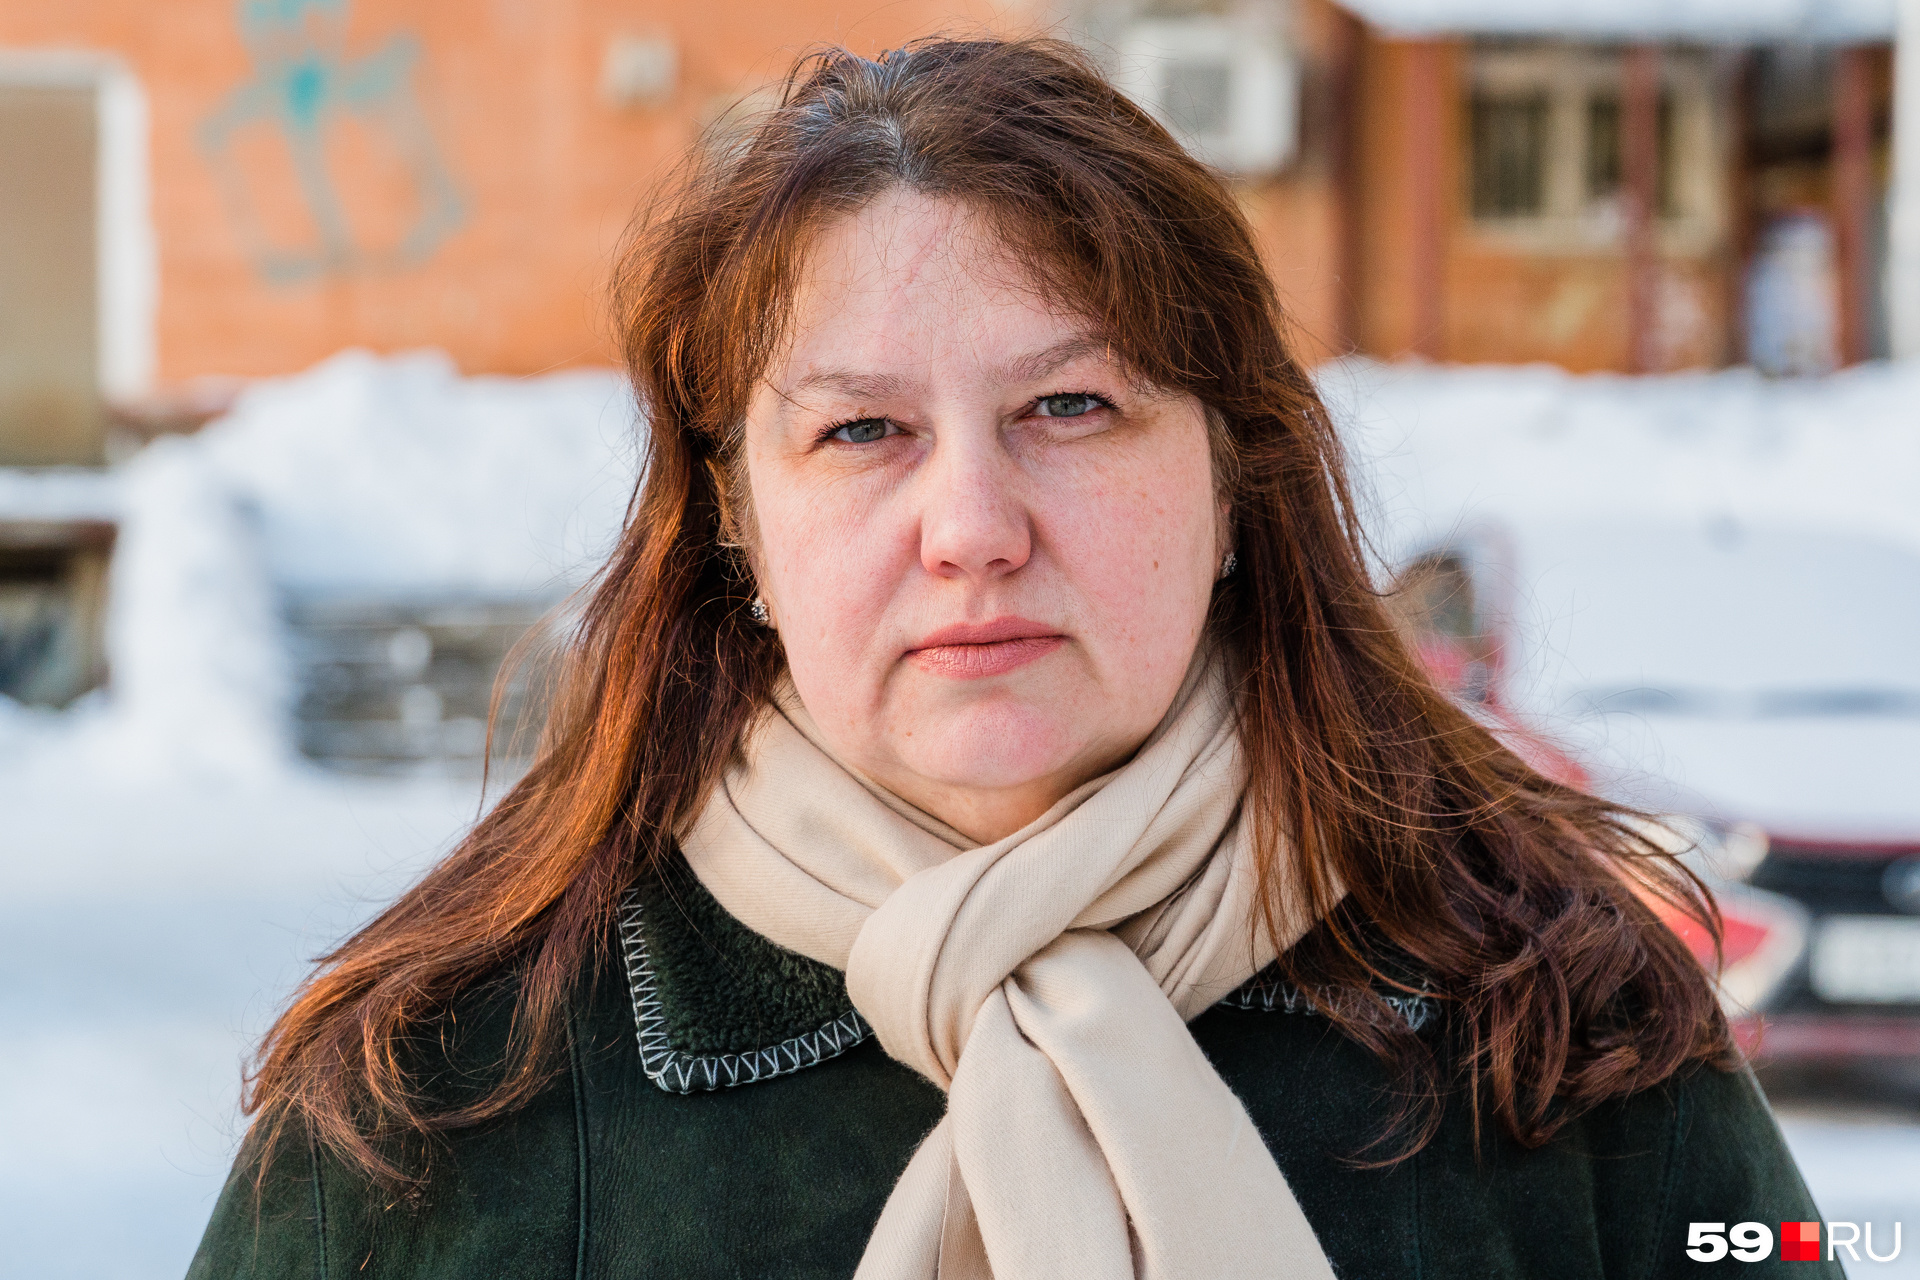 Руководитель организации «За сохранение НТО» Екатерина Безгодова